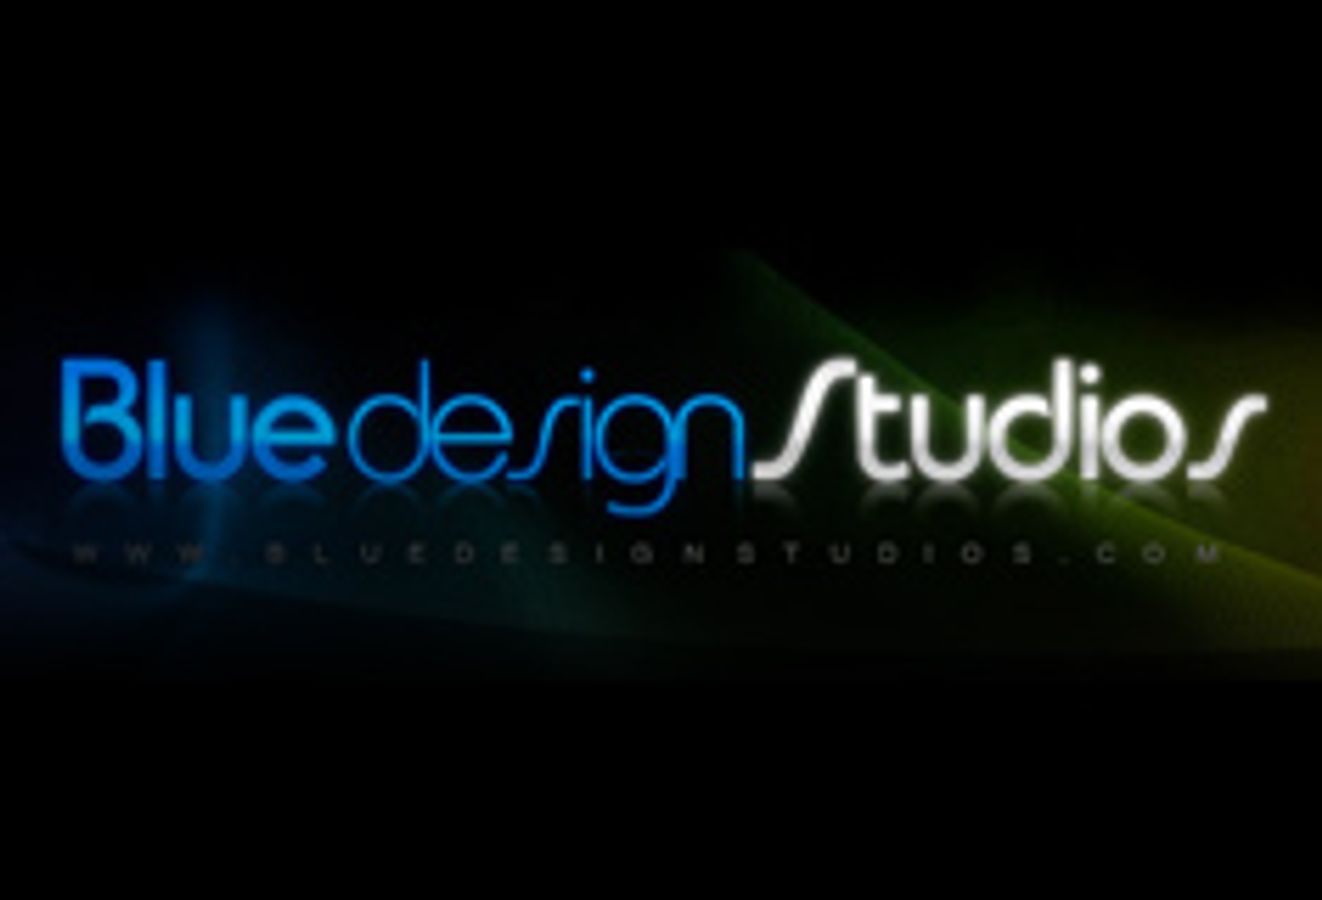 Blue Design Studios